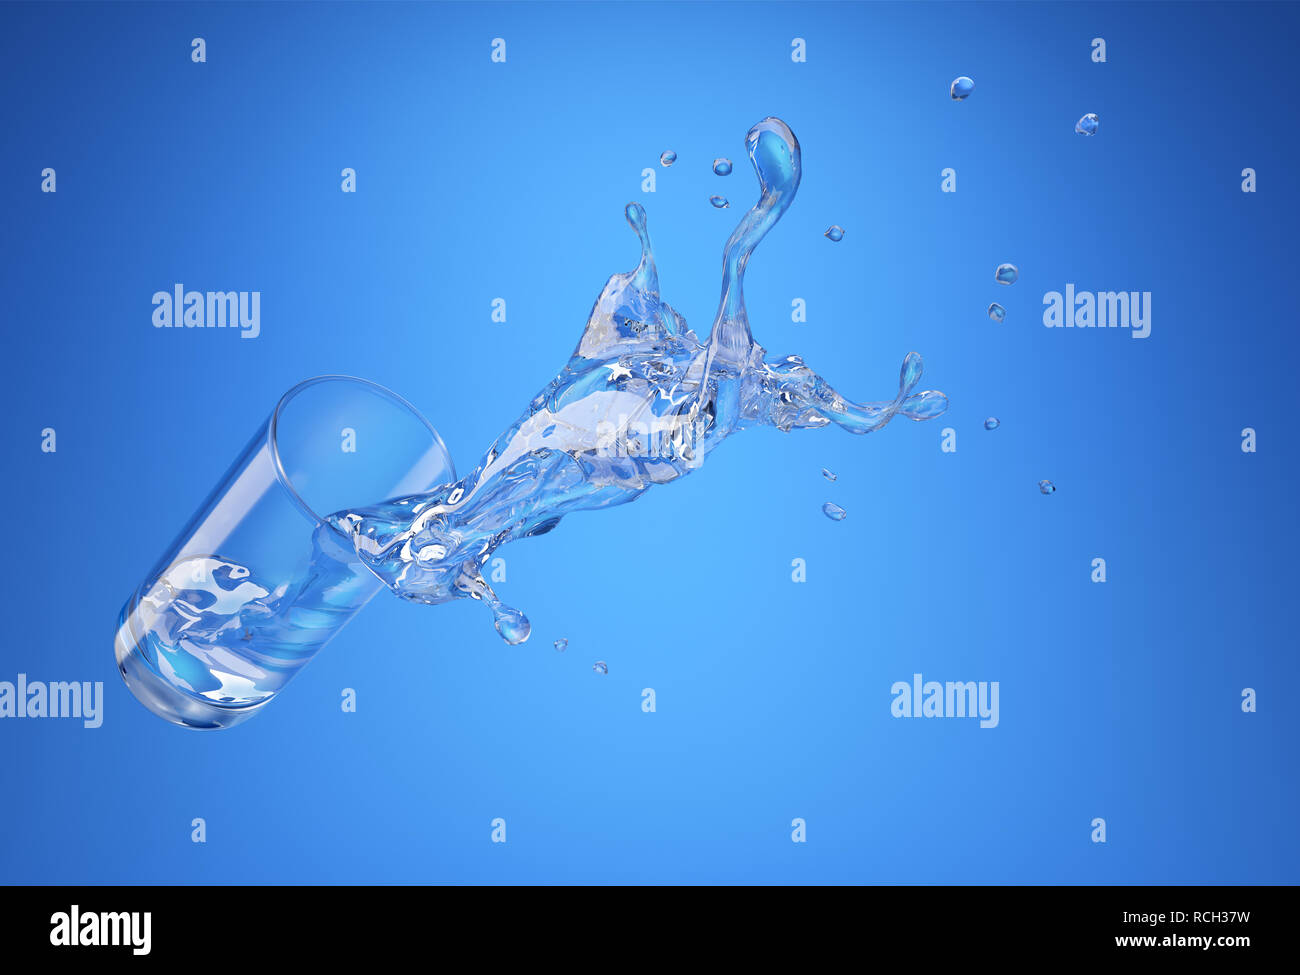 Vetro con fuoriuscita di spruzzi d'acqua. vista prospettica. Su sfondo blu. Percorso di clipping incluso. Foto Stock